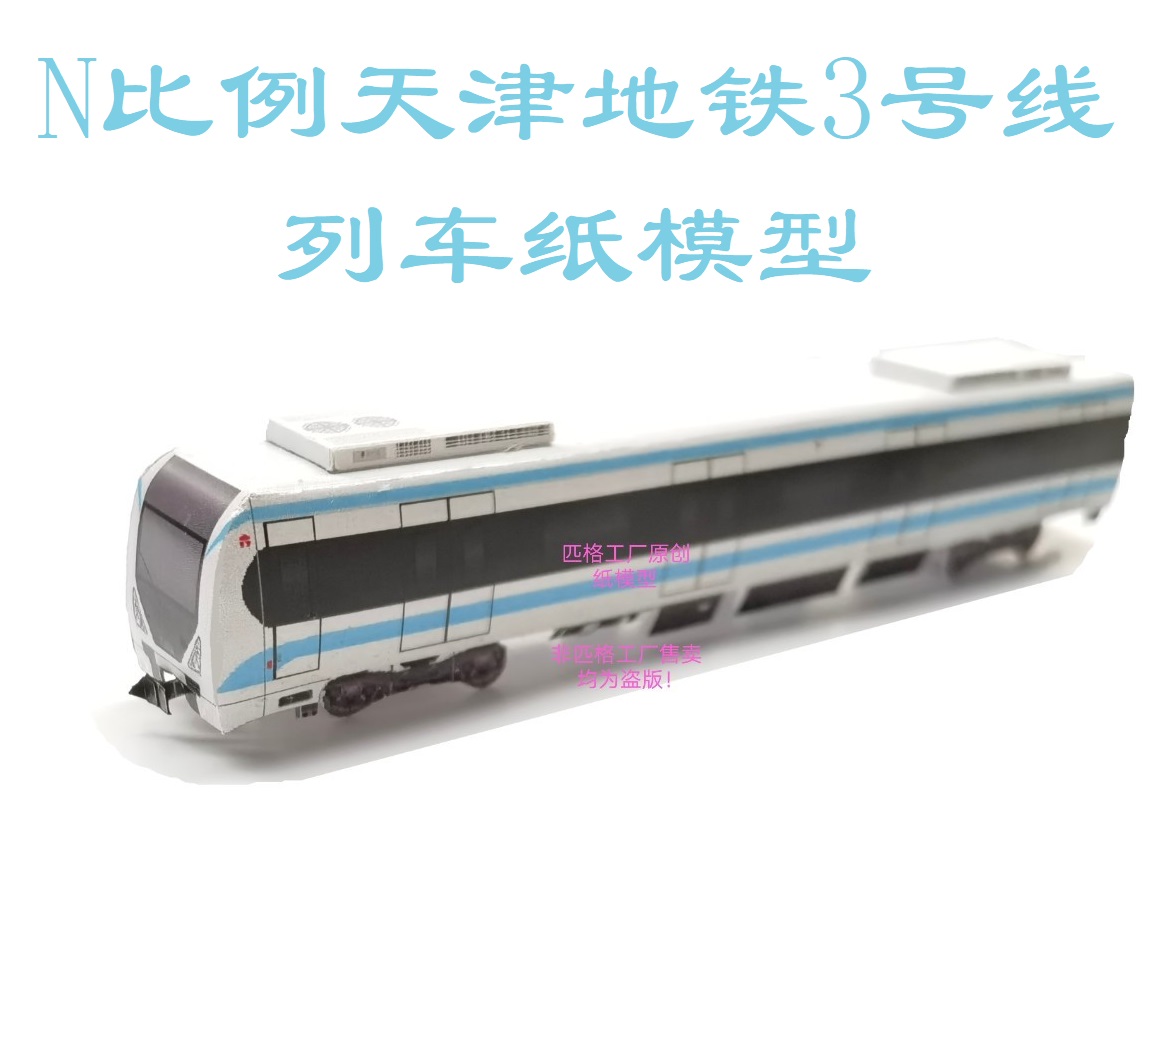 匹格N比例天津地铁3号线列车模型3D纸模手工DIY火车高铁地铁模型